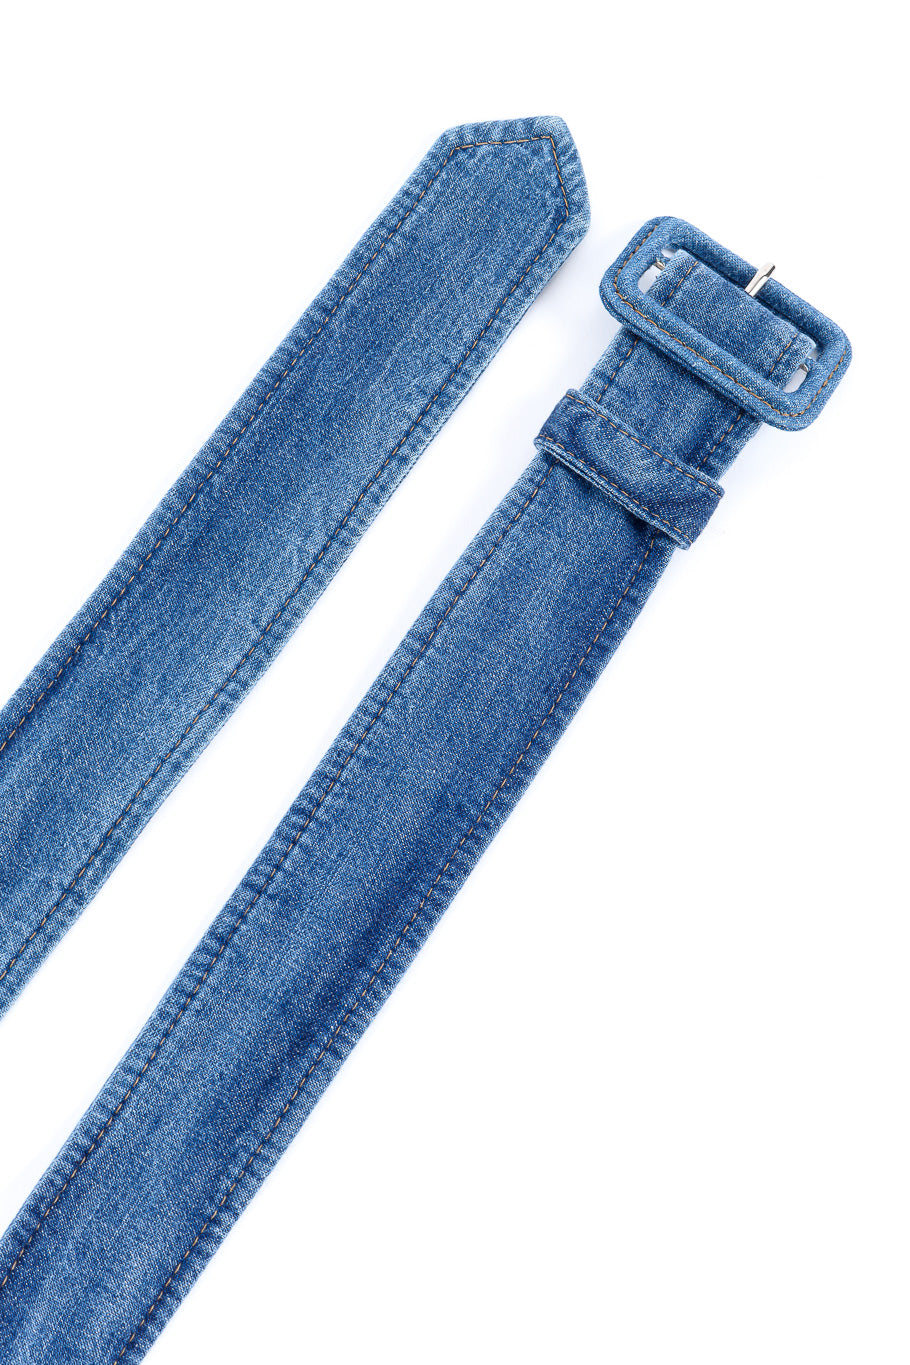 Prada denim peasant skirt belt details @recessla